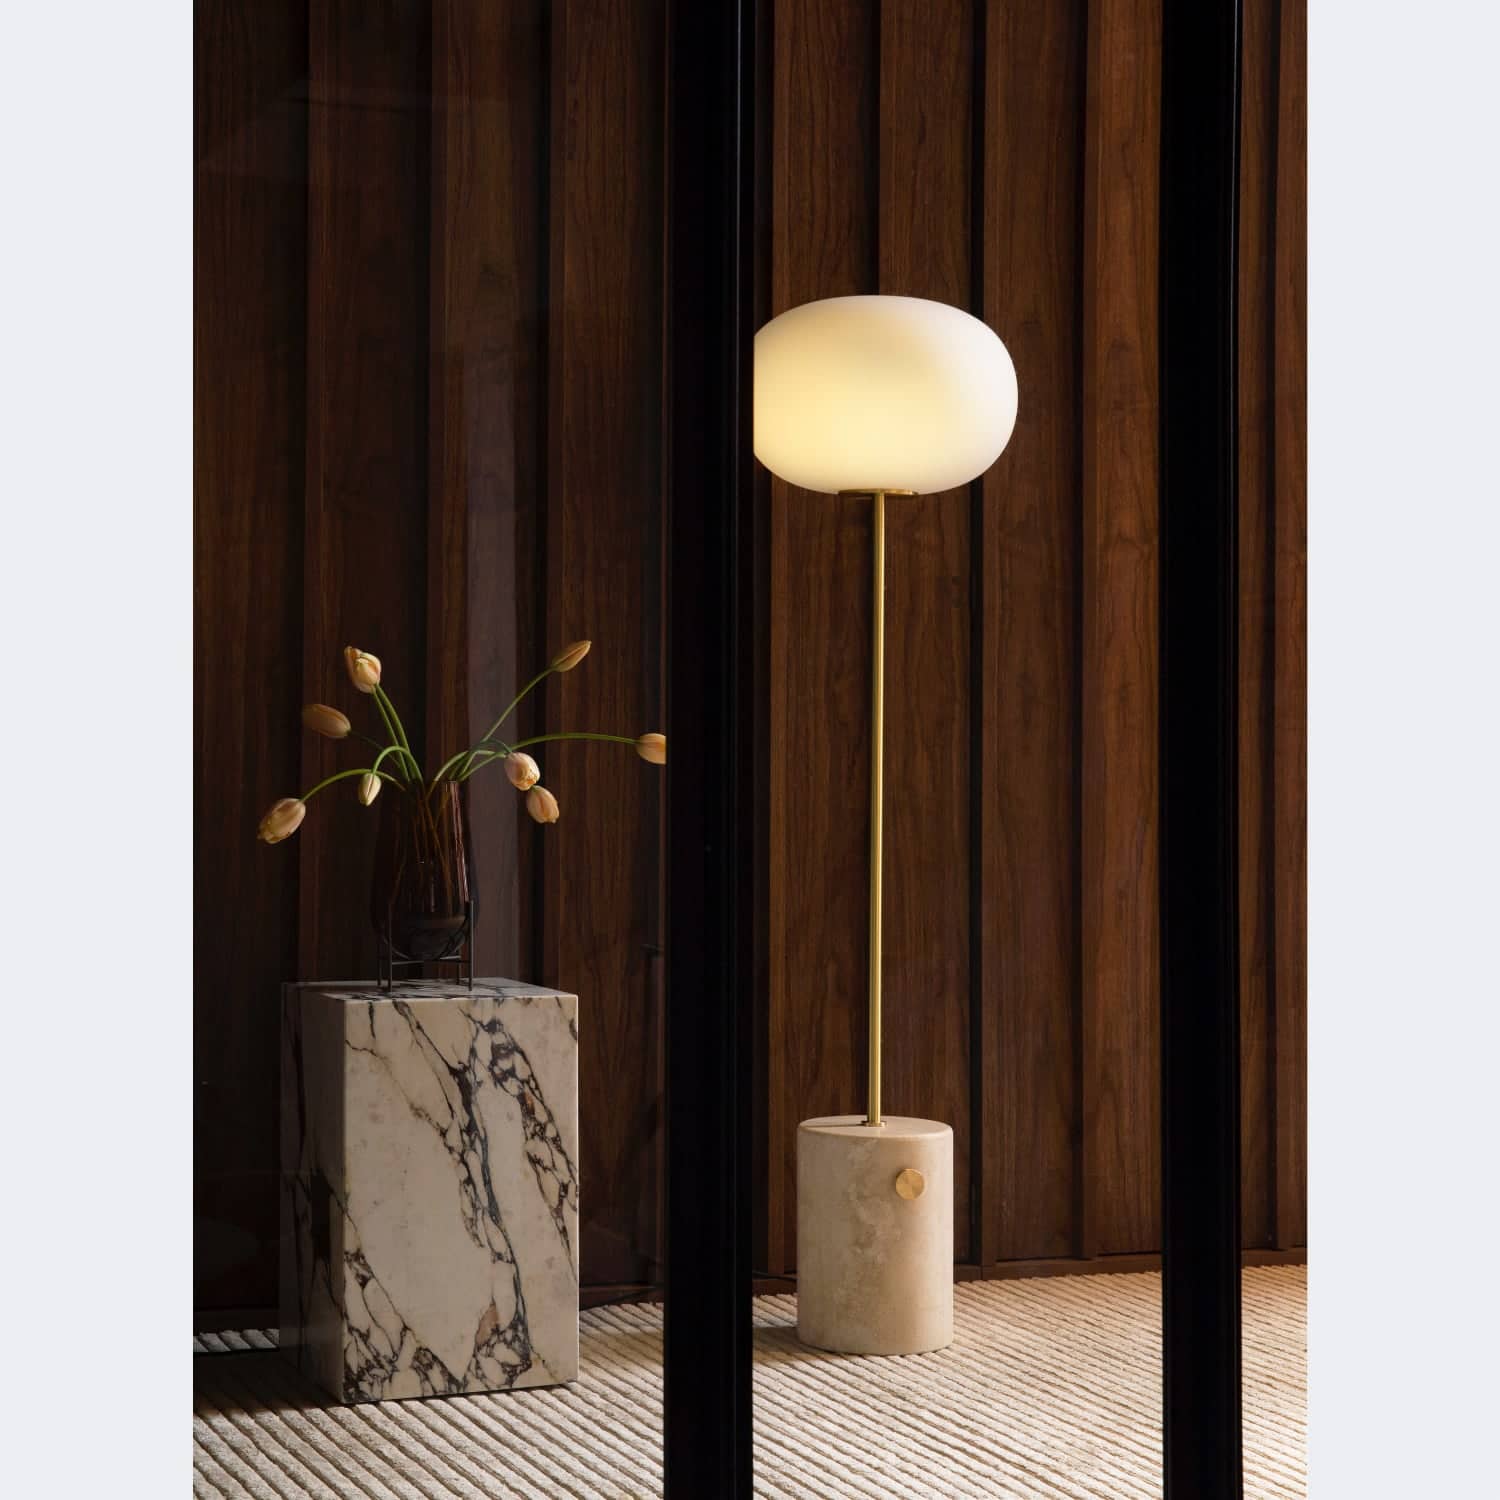 Audo Copenhagen JWDA Floor Lamp Travertine / Brushed Brass - KANSO#Finish_Travertine / Brushed Brass